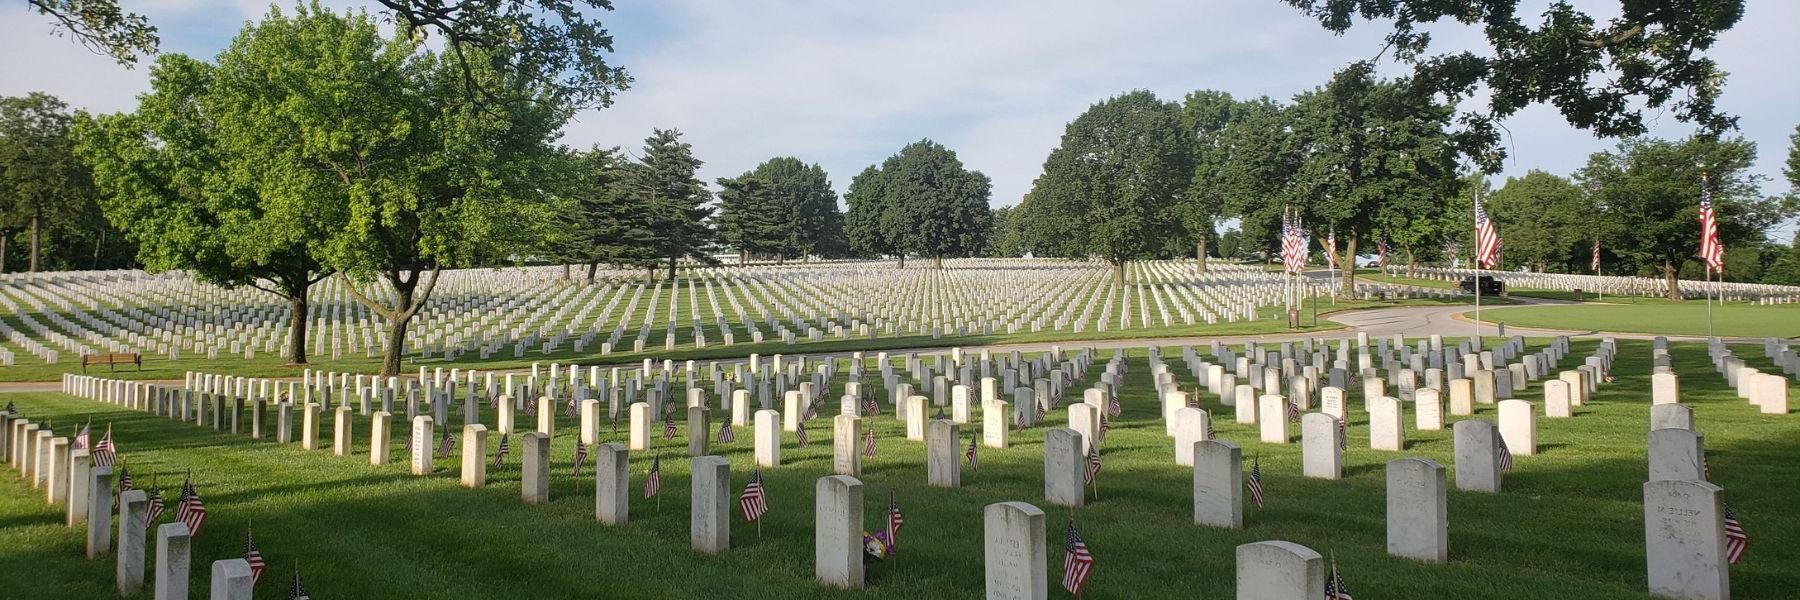 杰斐逊兵营国家公墓保存着2022世界杯投注斯在《2022世界杯投注》中扮演的迷人角色.S. 军事历史.